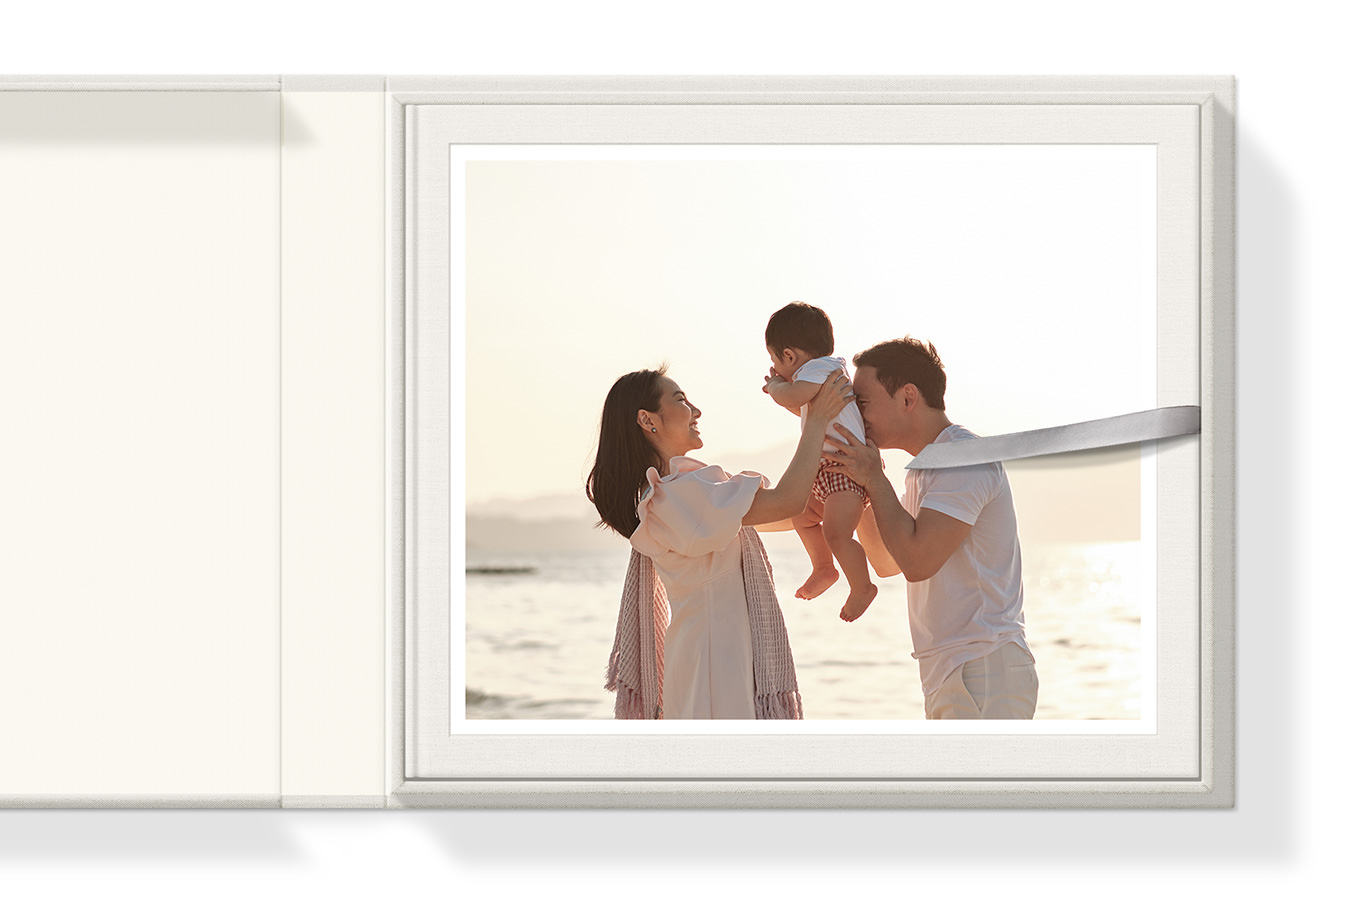 Álbum fotográfico clássico em uma caixa de apresentação com foto da capa dos pais brincando com seus filhos.